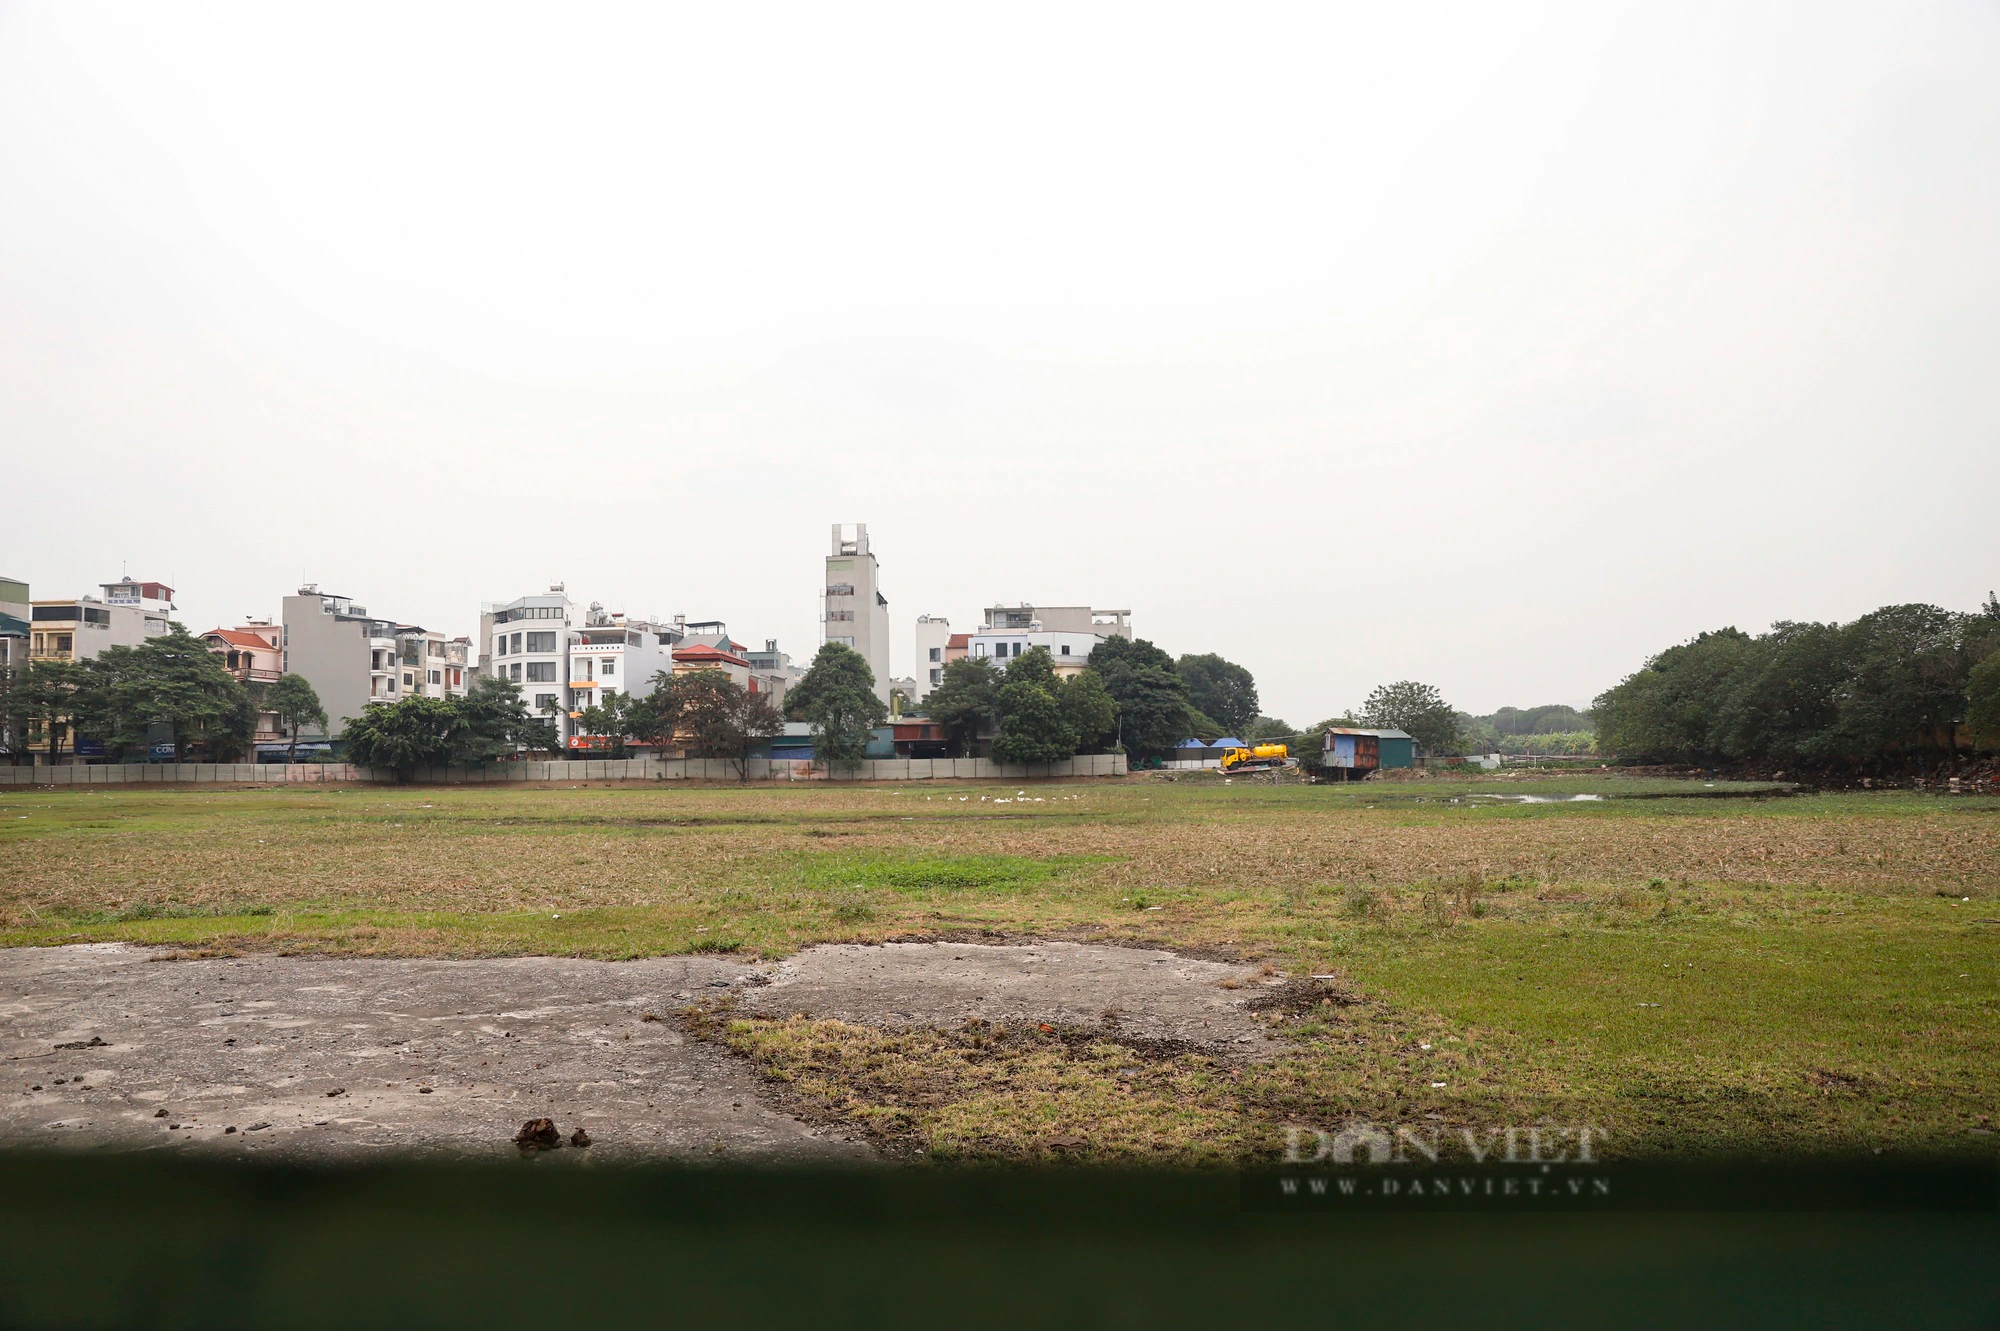 Sau 7 năm, khu đất đắc địa xây bến xe mới ở Hà Nội vẫn chỉ là bãi đất trống chăn thả trâu, gà vịt- Ảnh 4.